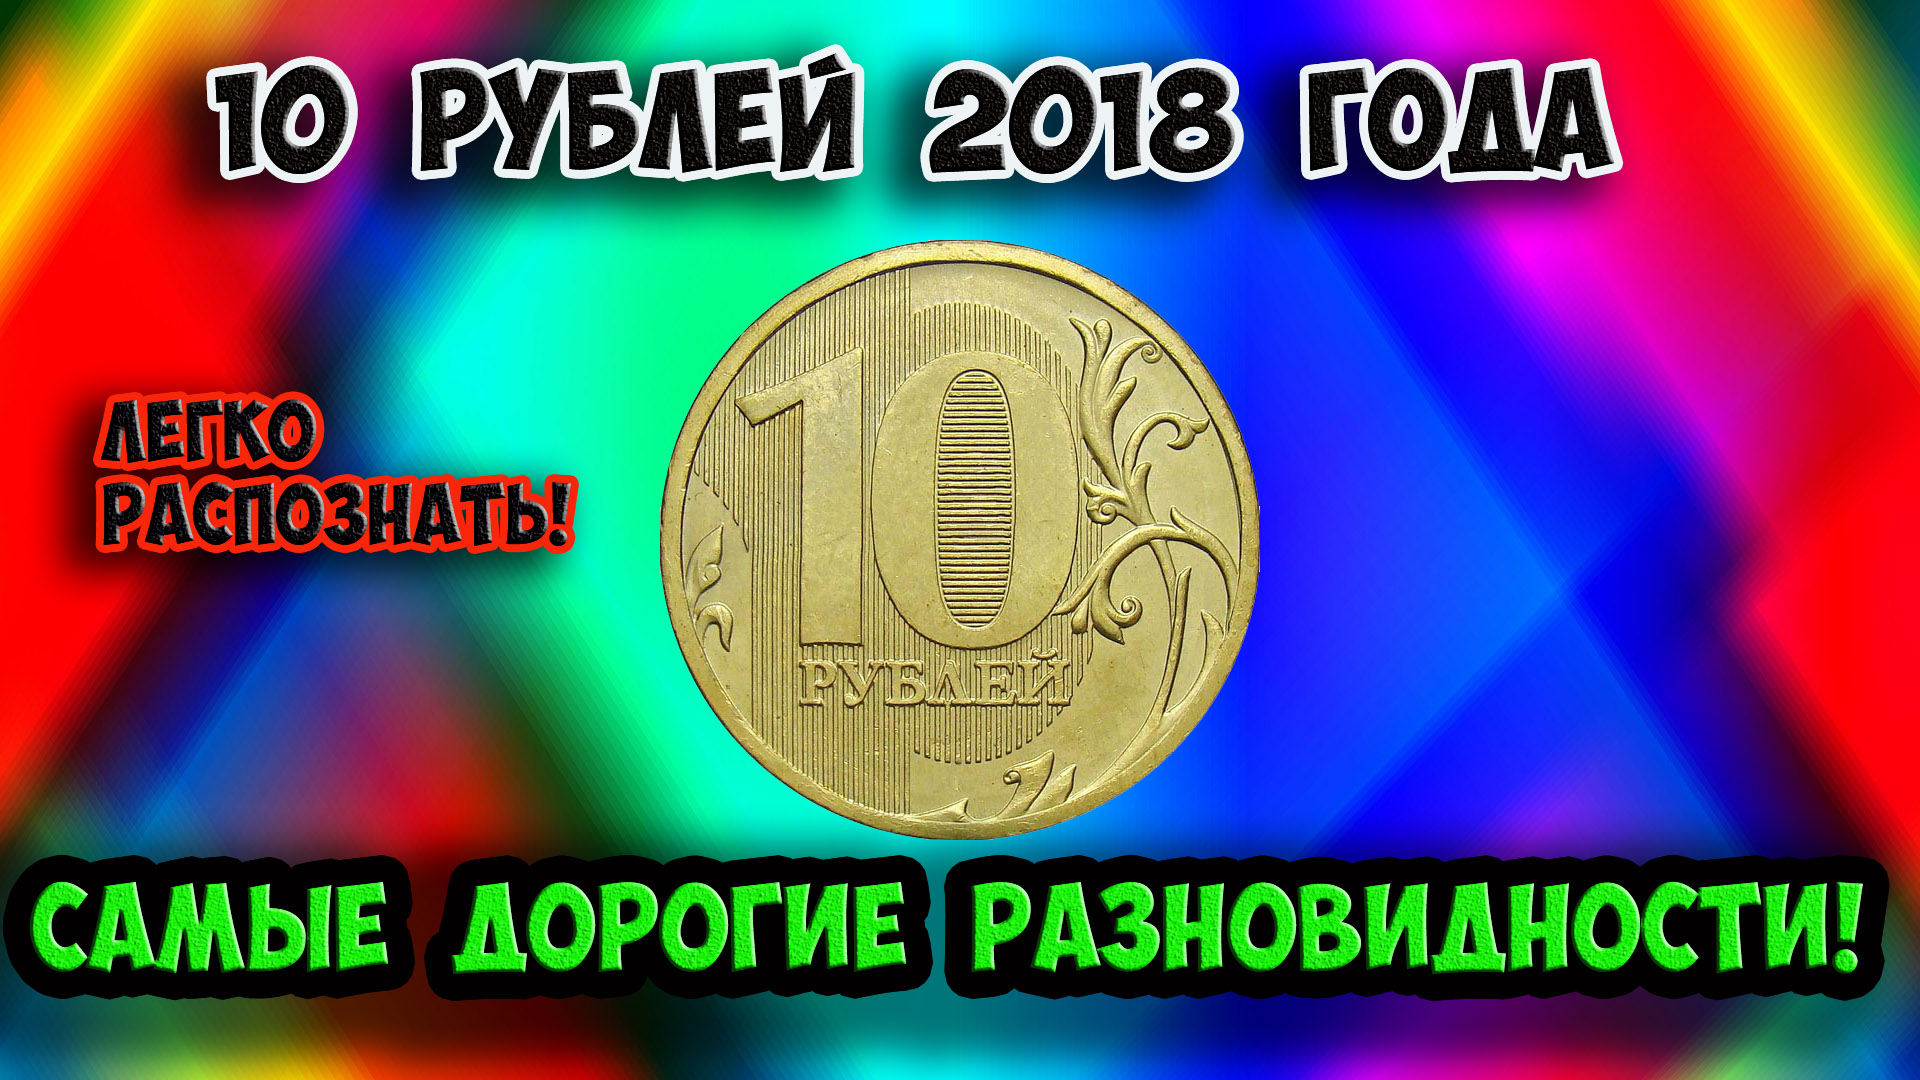 Монета 10 рублей 2018 года, ее очень дорогие разновидности и их стоимость. Учимся распознавать!